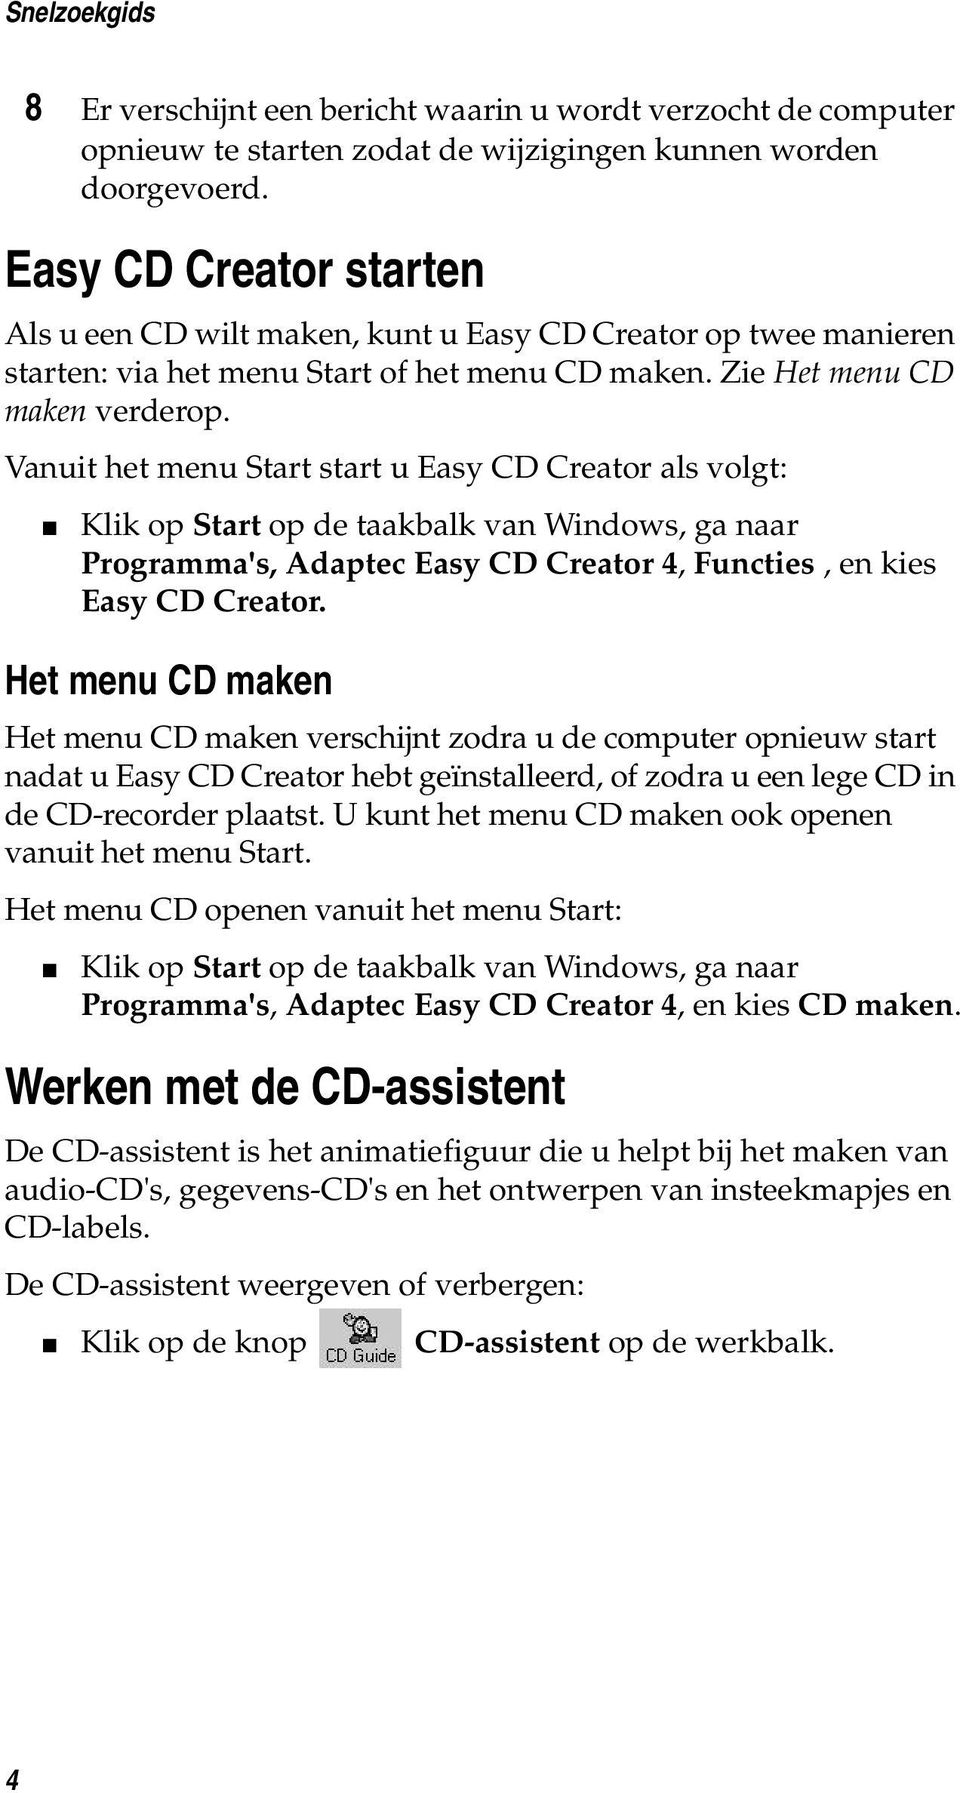 Vanuit het menu Start start u Easy CD Creator als volgt: Klik op Start op de taakbalk van Windows, ga naar Programma's, Adaptec Easy CD Creator 4, Functies, en kies Easy CD Creator.